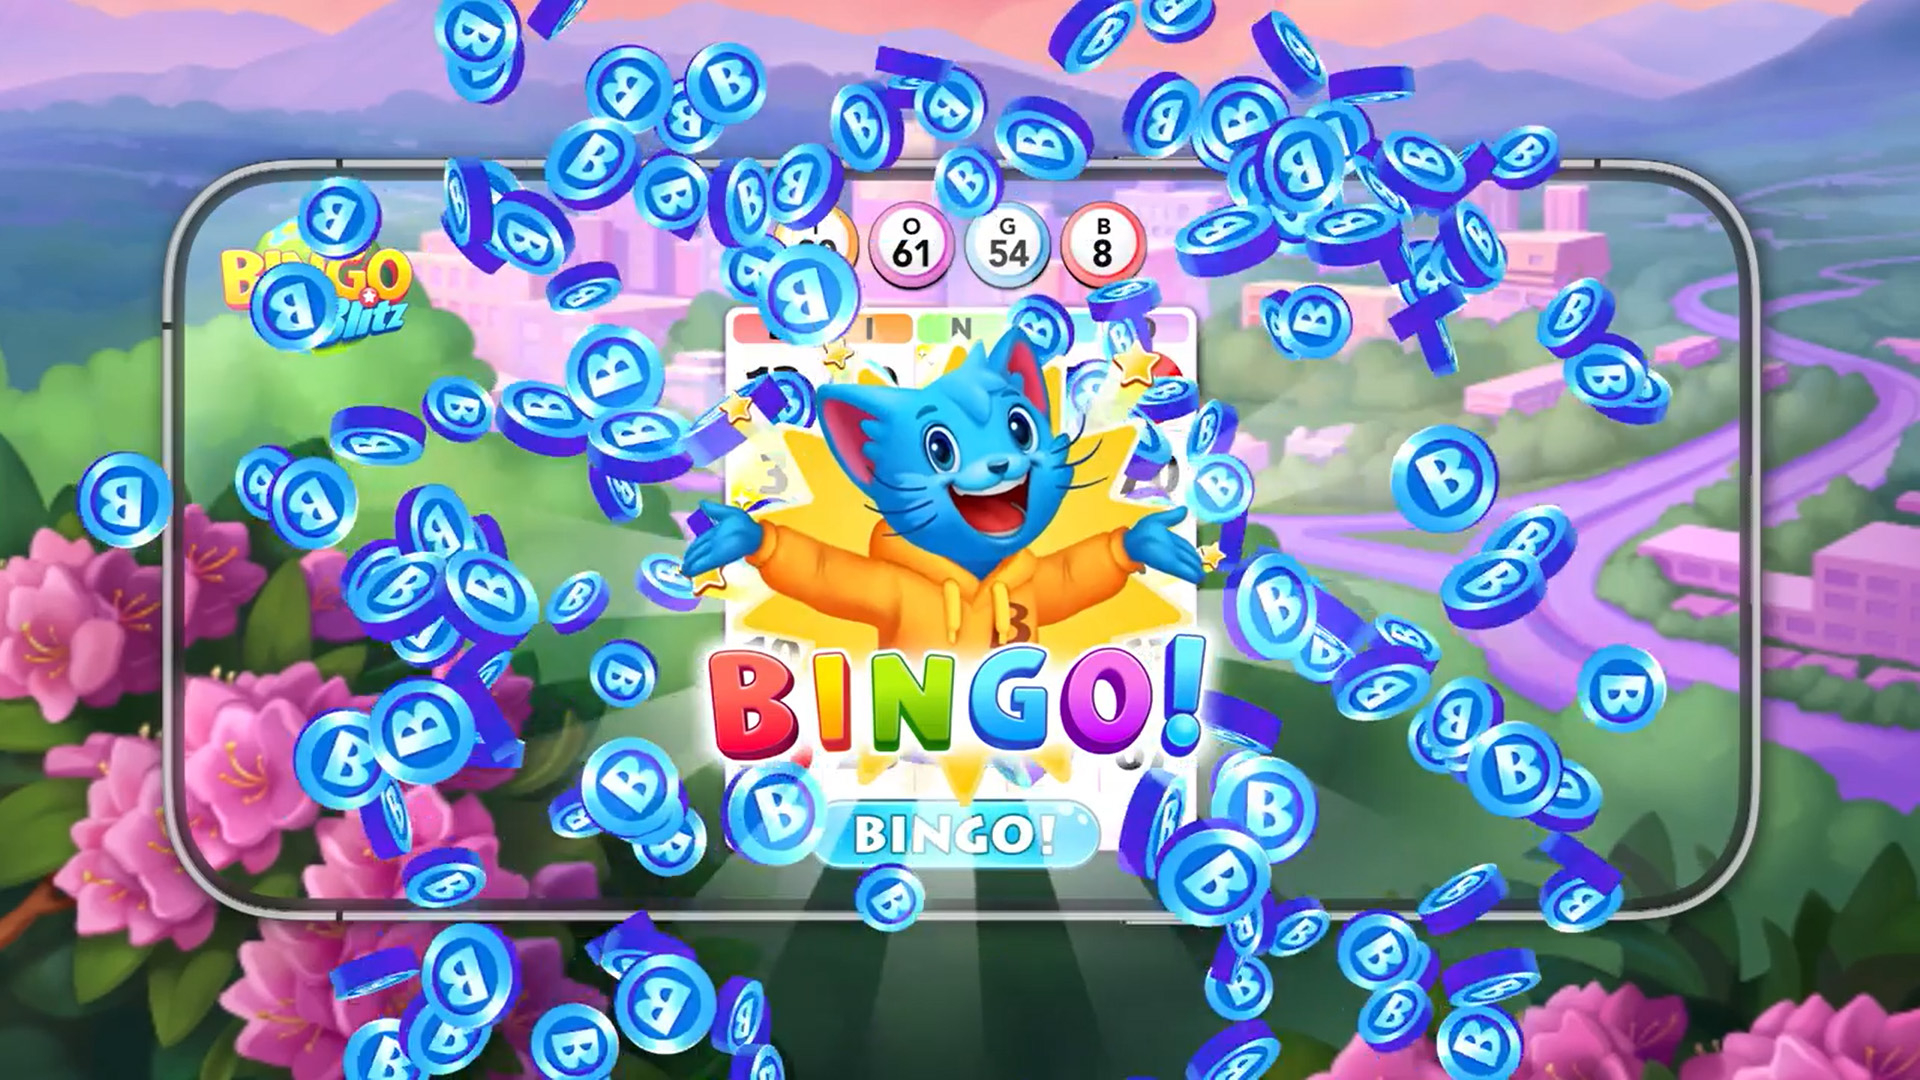 Experiencia de bingo en línea en comunidad